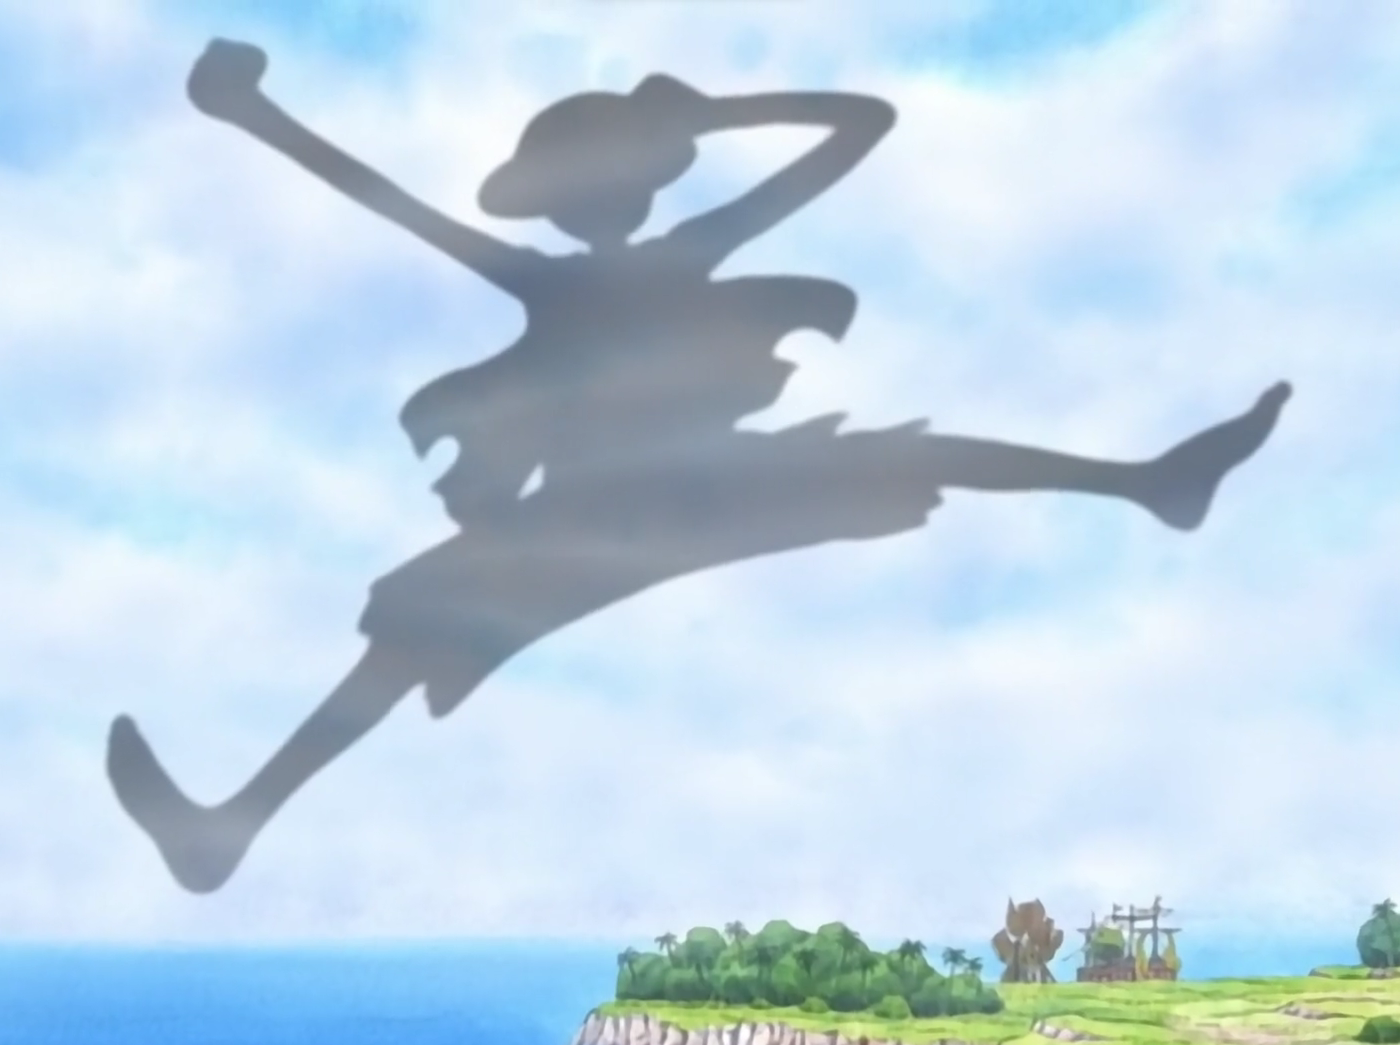 One Piece Skypiea Luffy's giant shadow in the sky